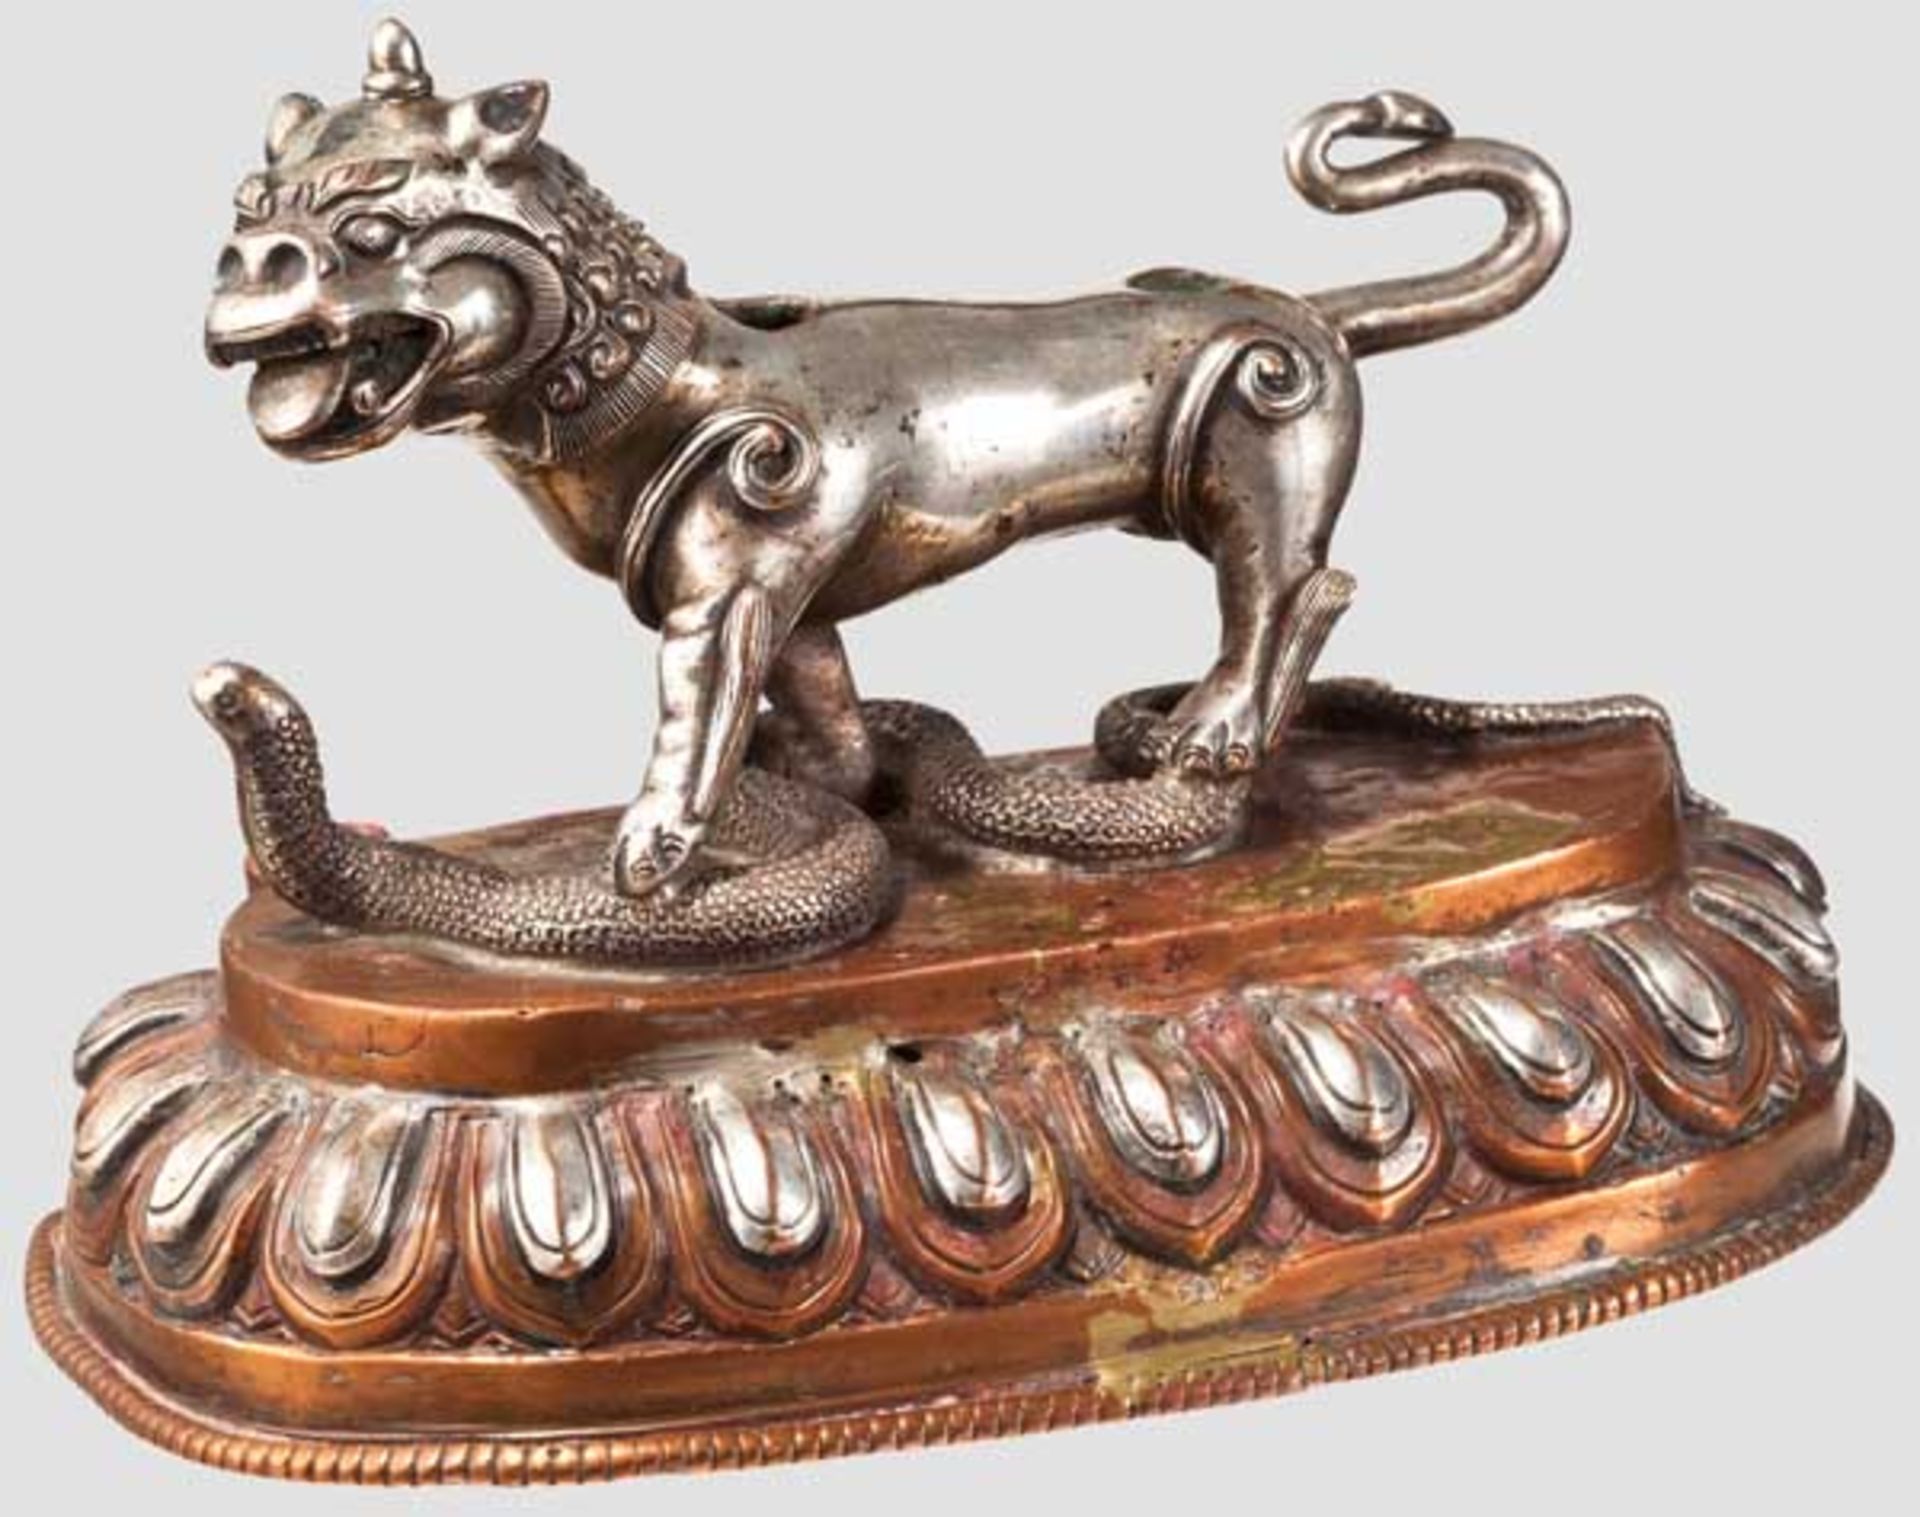 Lotossockel mit Löwe und Schlange, Tibet, 17./18. Jhdt. Sockel aus Kupfer, der Dekor zum Teil